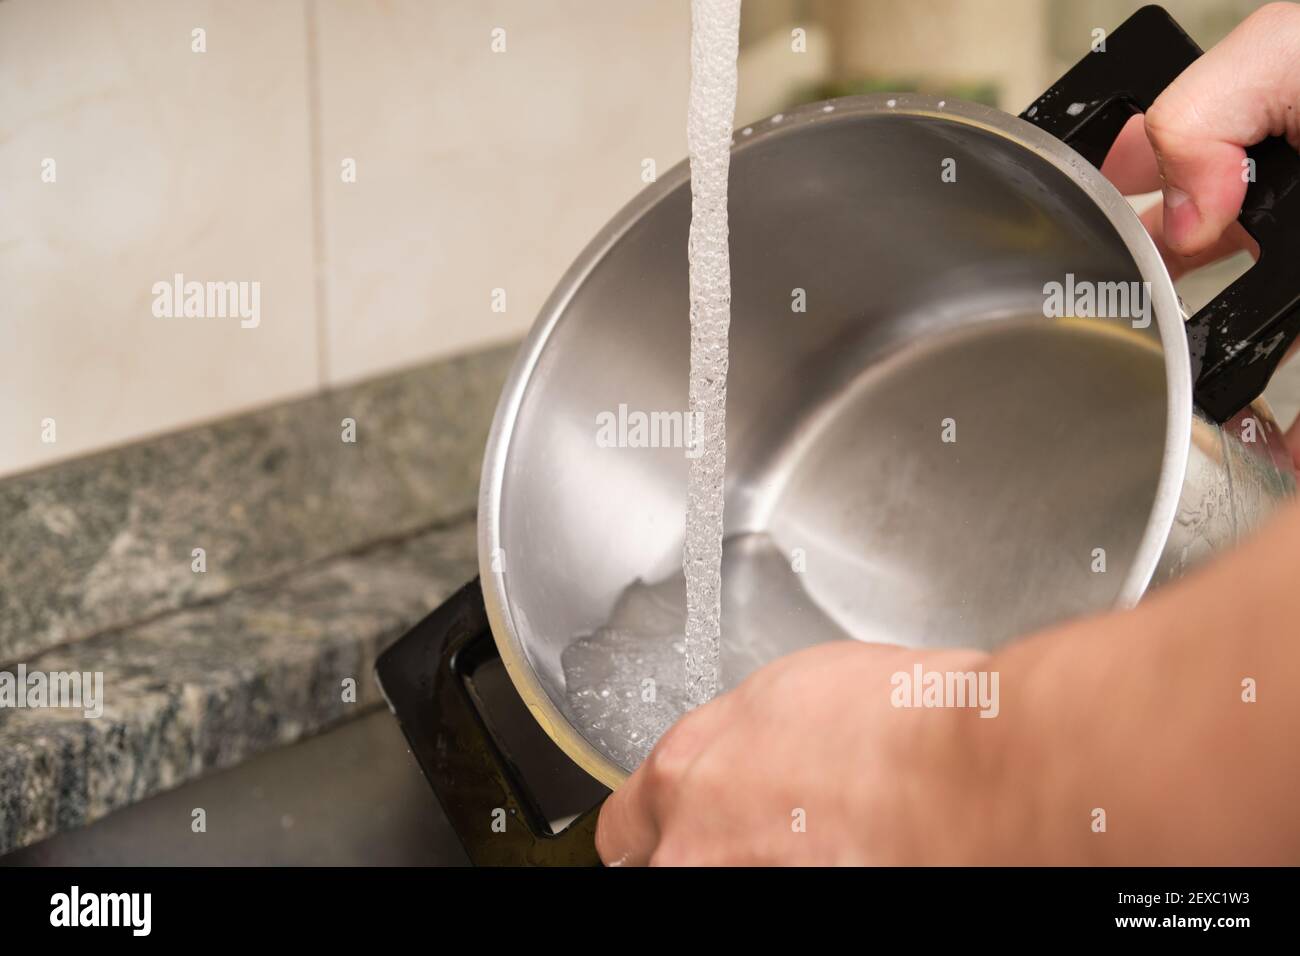 Zugeschnittenes Bild eines Mannes Hände waschen einen Topf oder das Geschirr tun. Reinigung der Hausarbeiten. Stockfoto